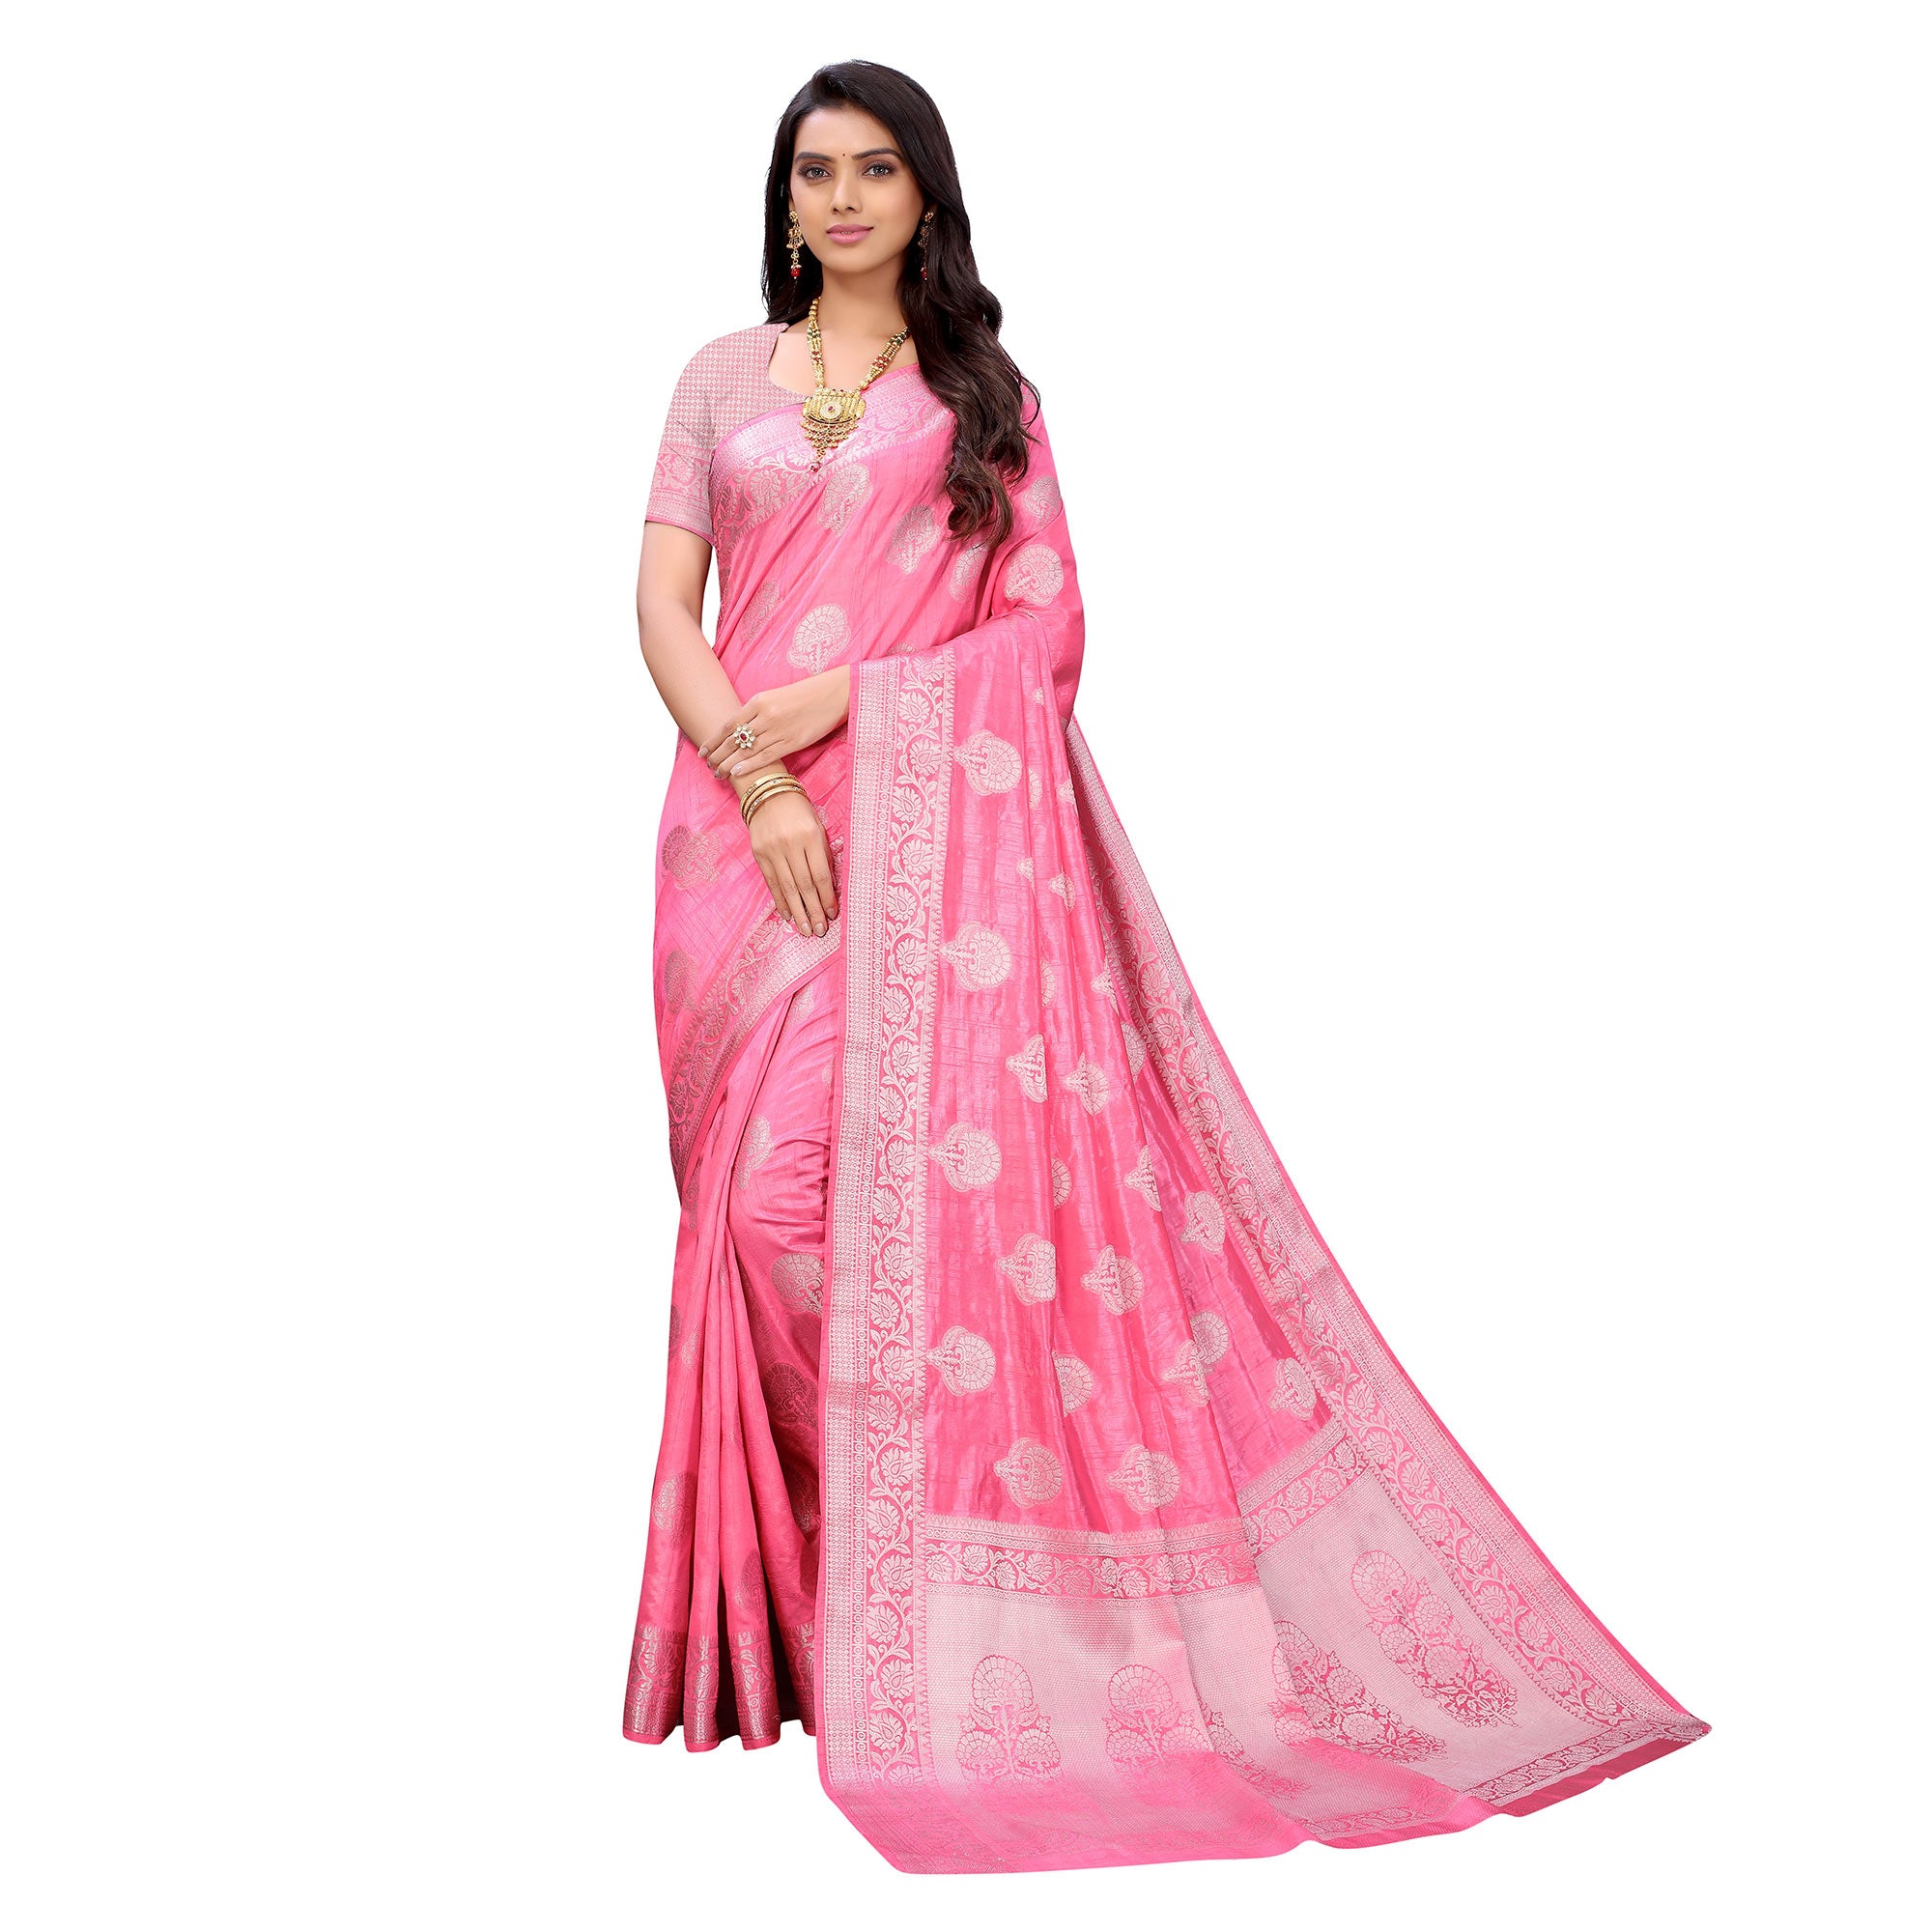 Gajari Pink Festive Wear Woven Art Silk Saree